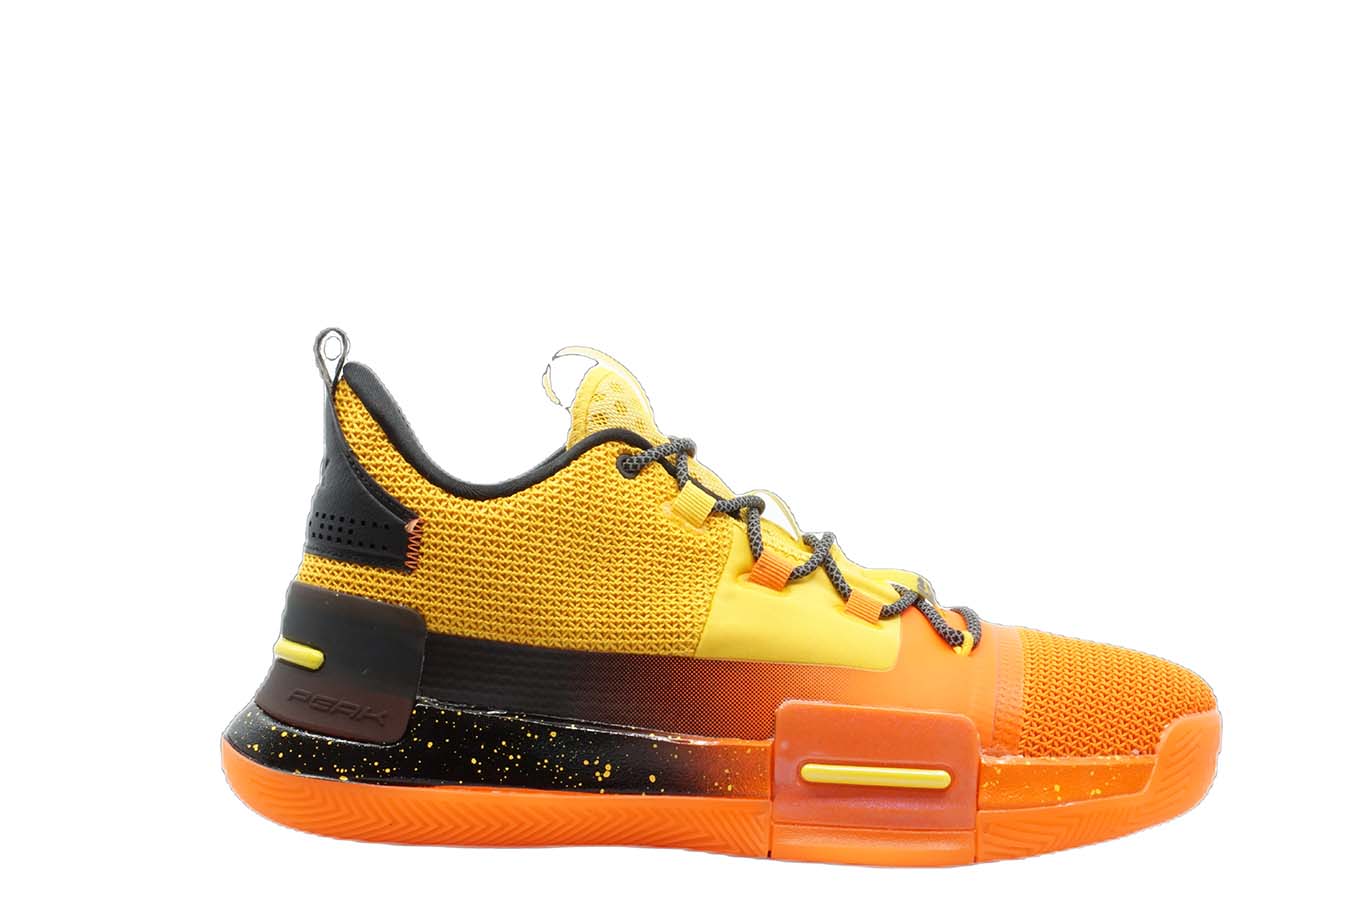 [E94451] Mens Peak Taichi Flash Lou Williams Team Orange Basketball Shoes - 12 - image 1 of 1